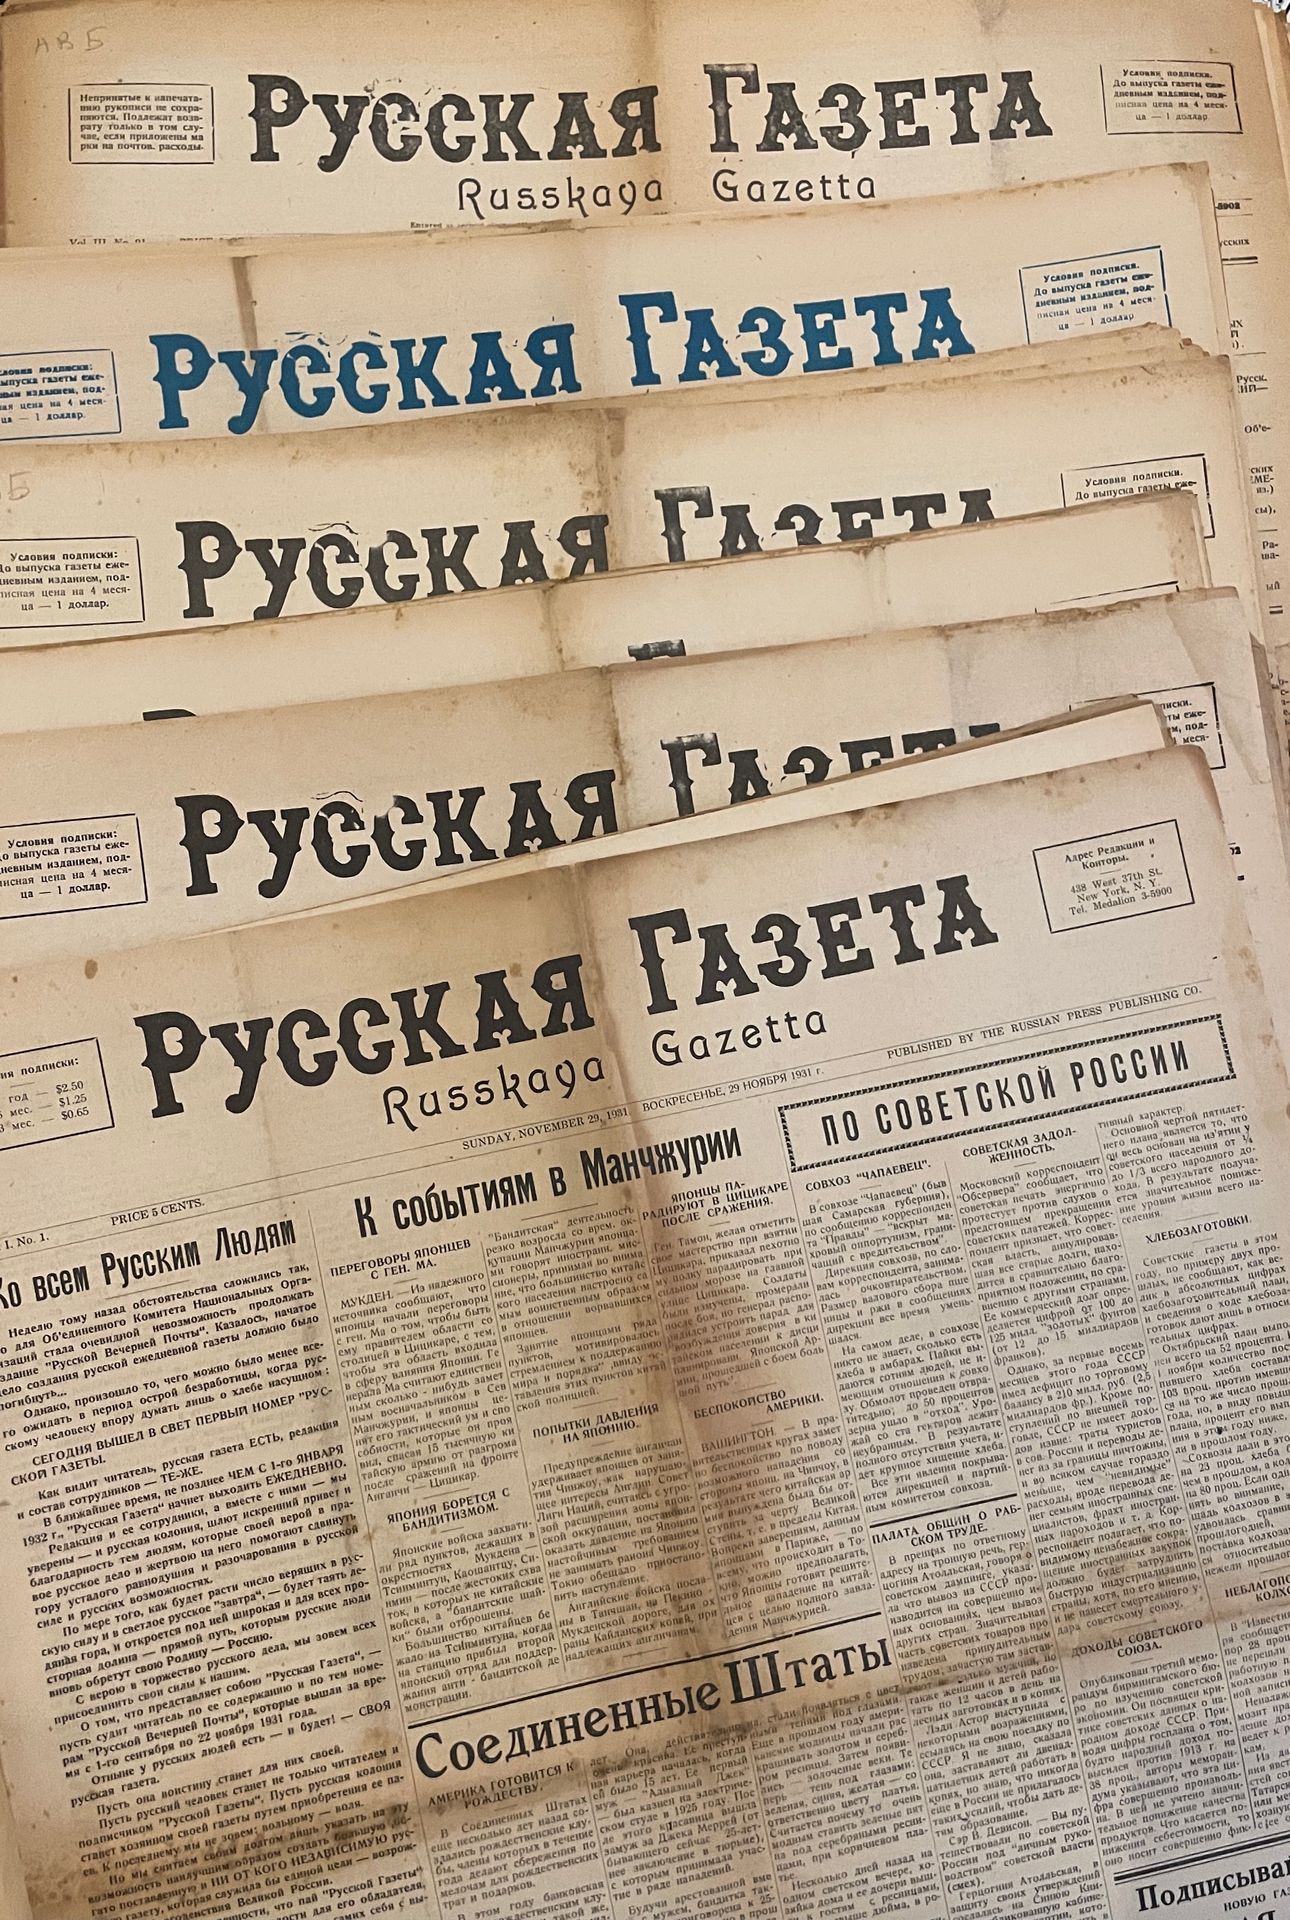 Null GIORNALI PATRIOTICI dell'emigrazione russa

"Diario russo". 1931-1934. 

ПА&hellip;